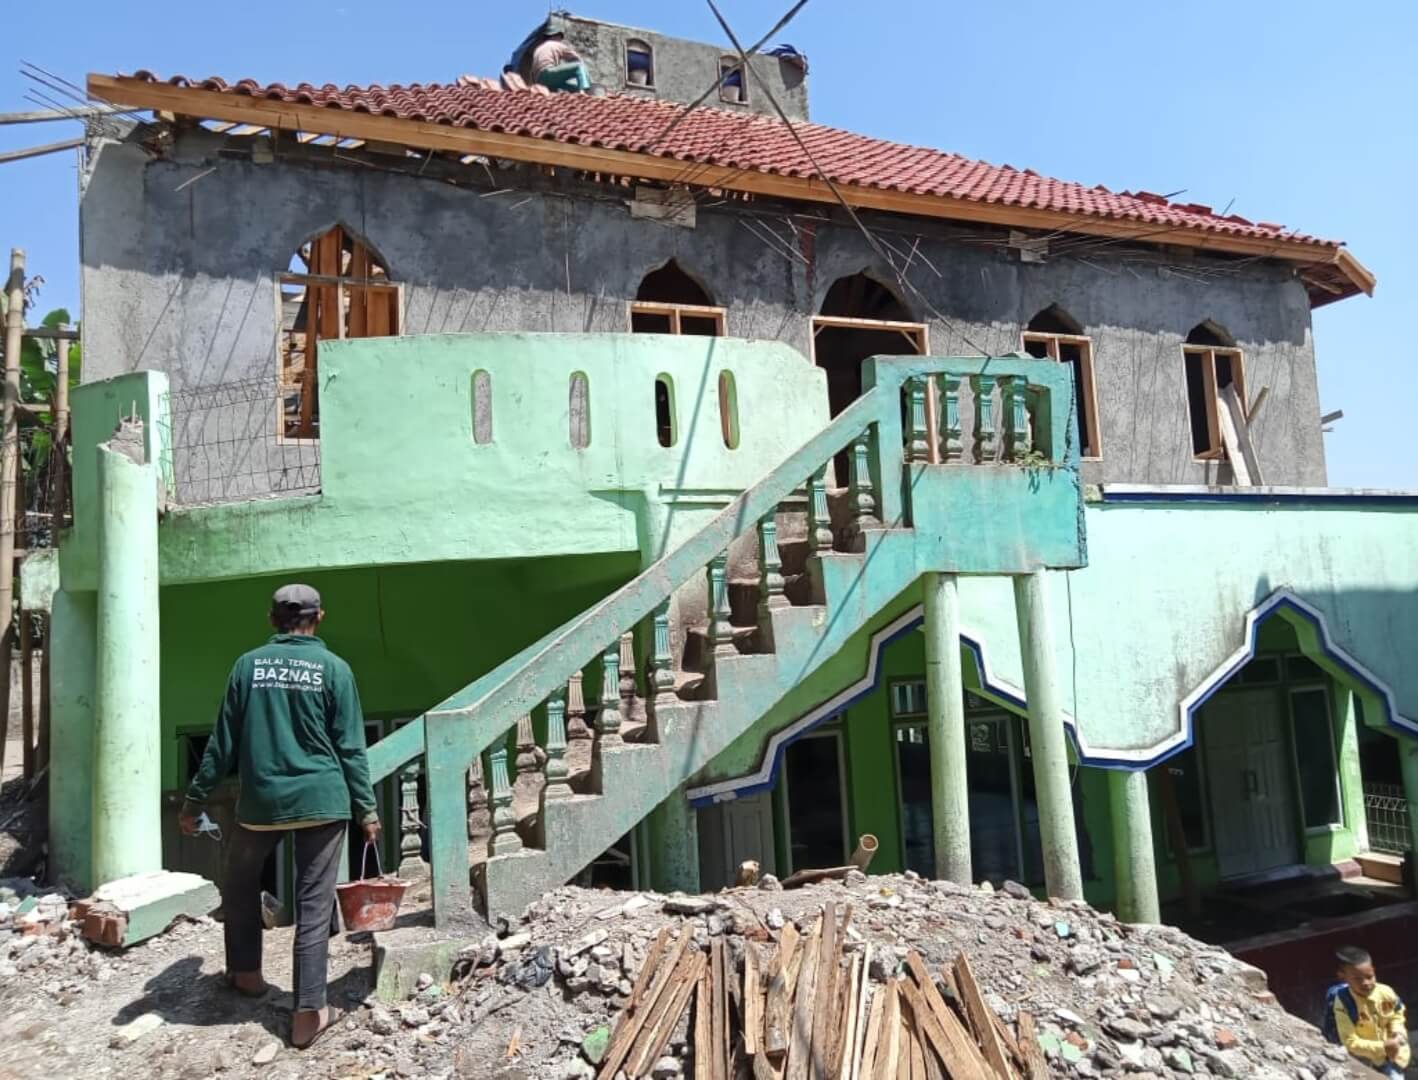 Kelompok Peternak Mustahik BAZNAS di Garut Bantu Renovasi Masjid dari Hasil Penjualan Ternak Kurban